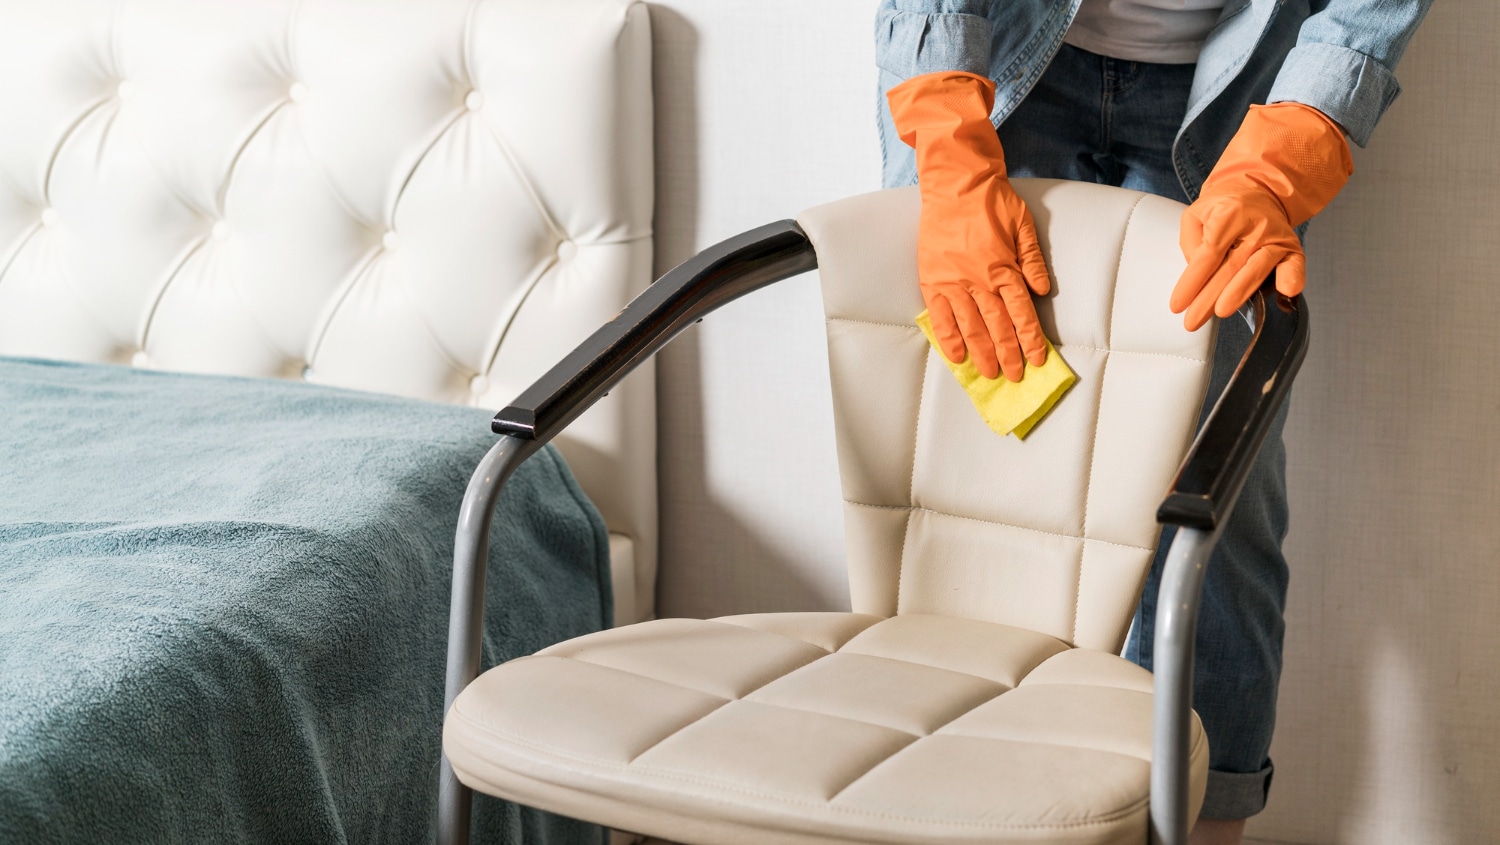 Personne en gants orange nettoyant avec soin un fauteuil en cuir crème à l'aide d'une éponge jaune.